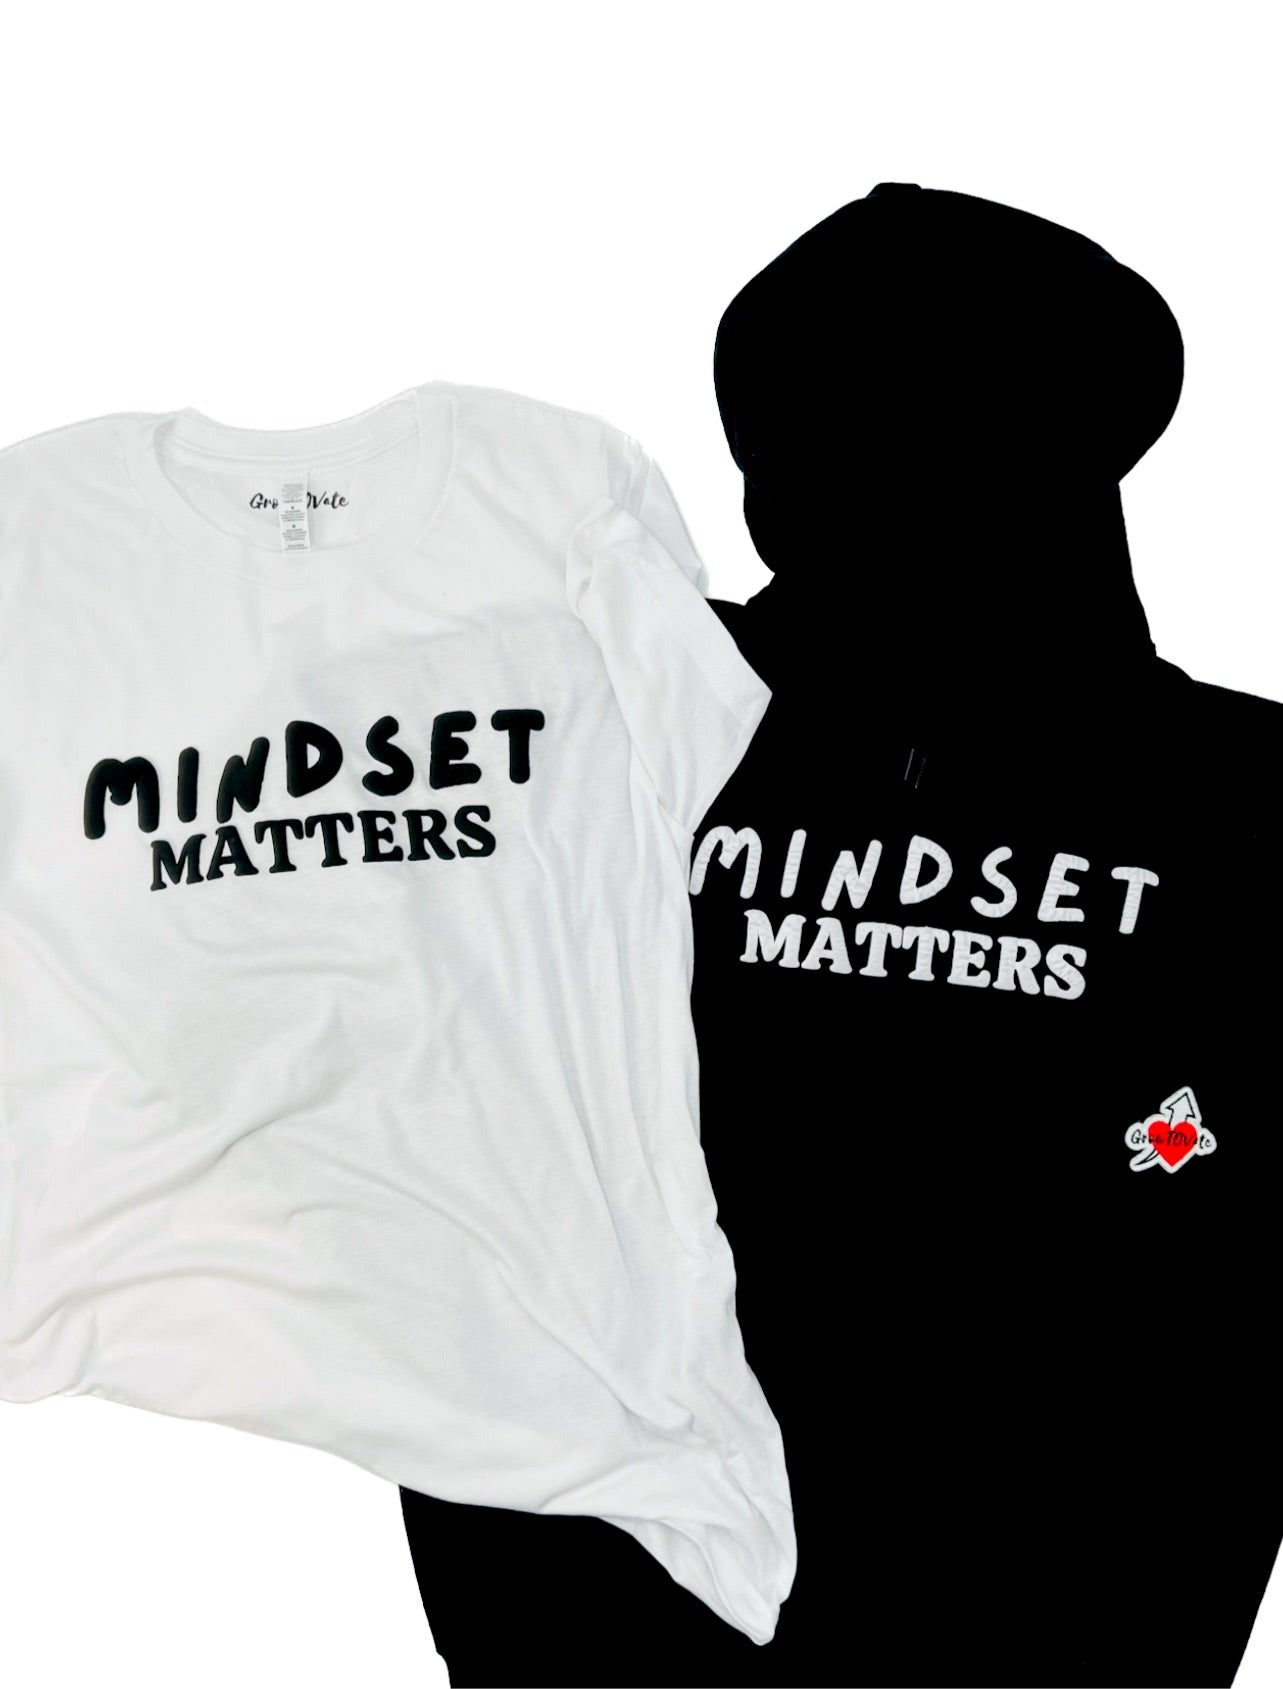 Mindset Matters Tee & Sweatshirt - GrowToVate